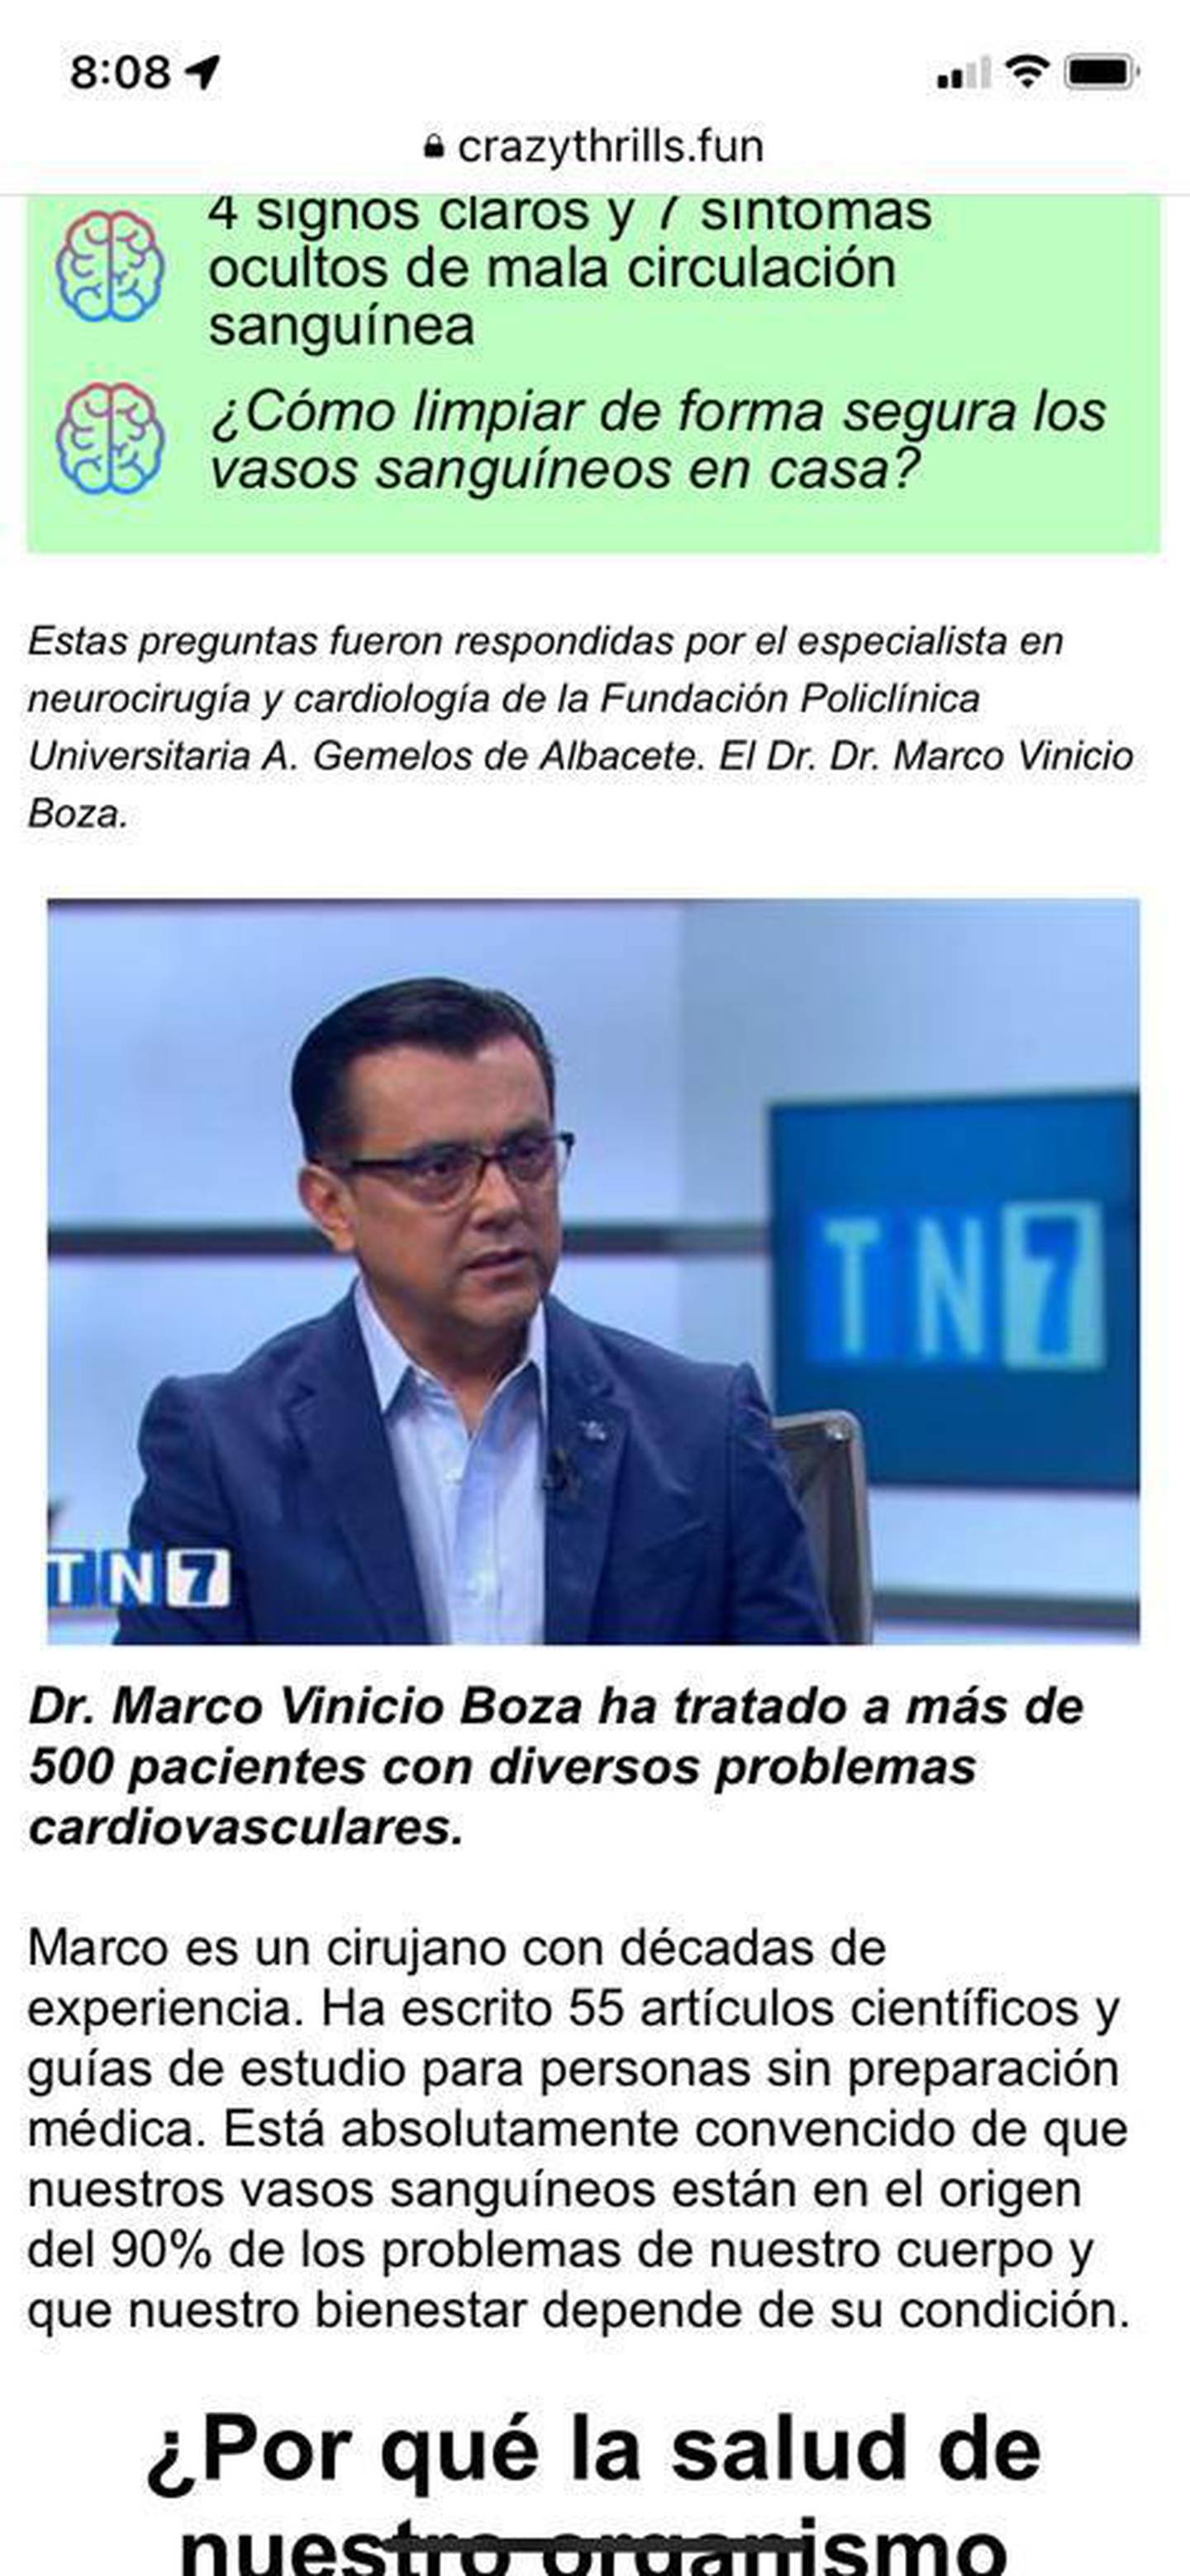 Doctor Marco Vinicio Boza aclaró que vídeo y fotografía que circulan en redes sociales son falsas.